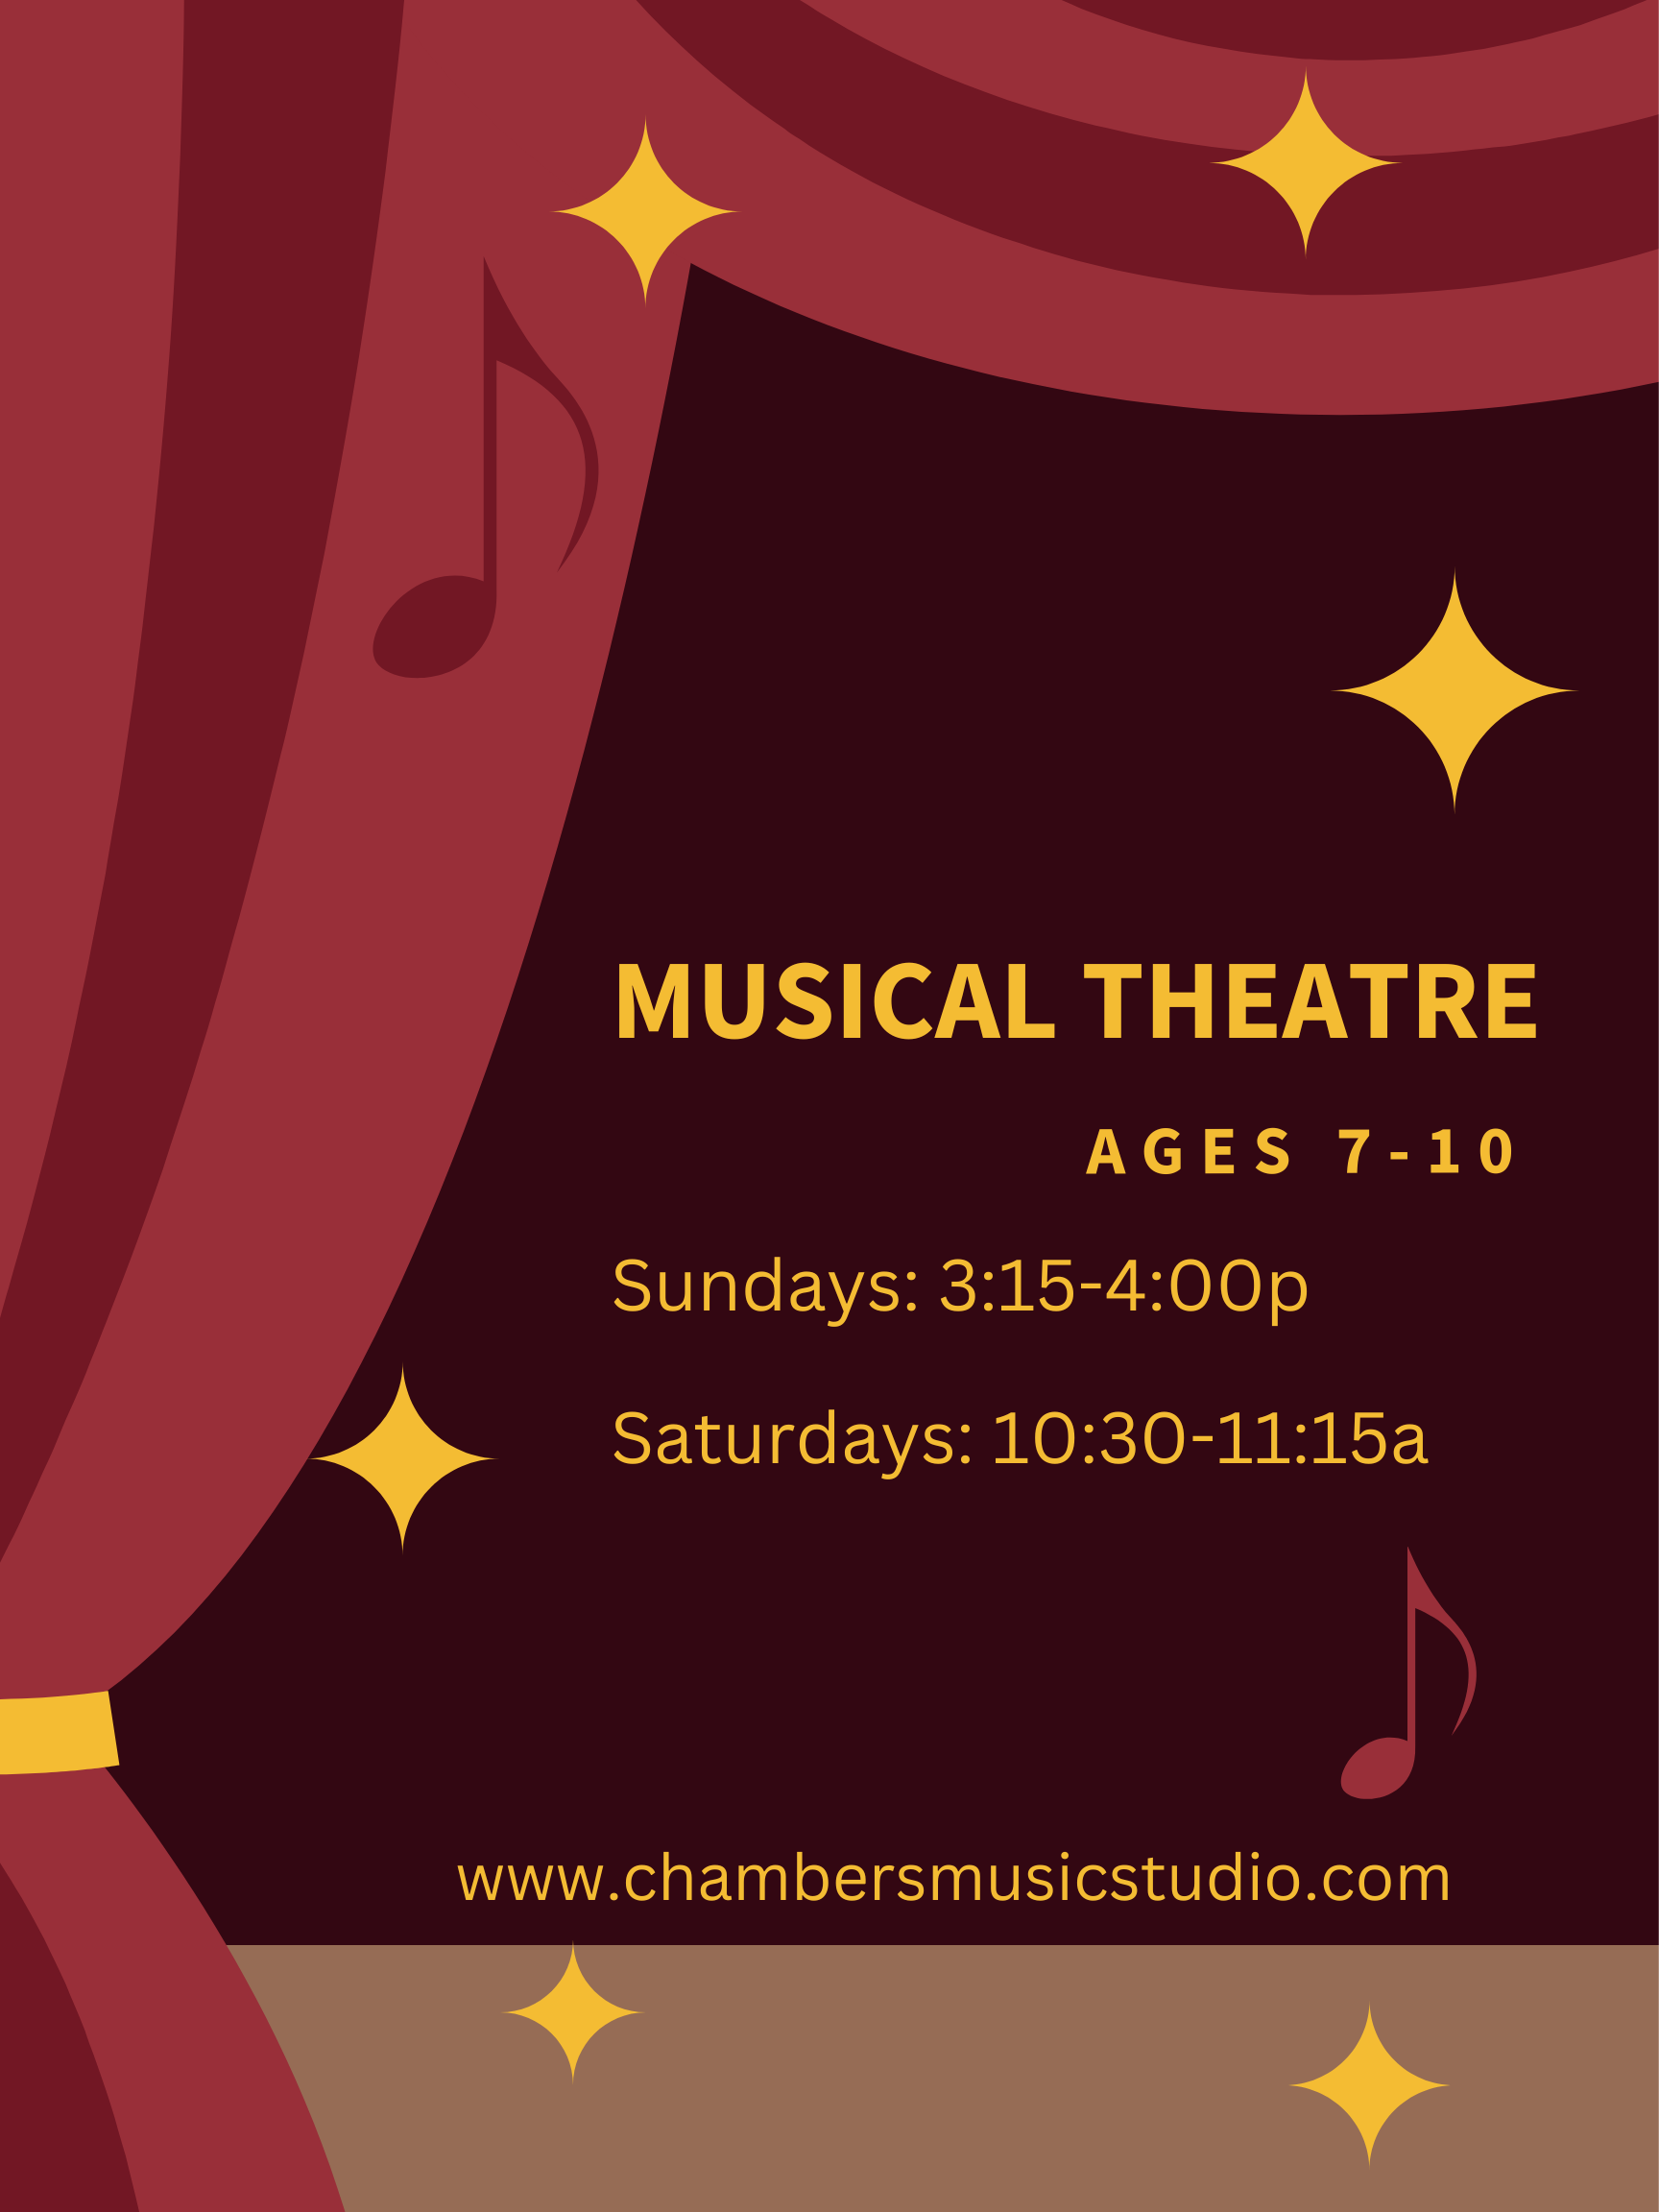 Musical Theatre Ages 7-10 Sundays 3:15-4:00 Saturdays 10:30-11:15